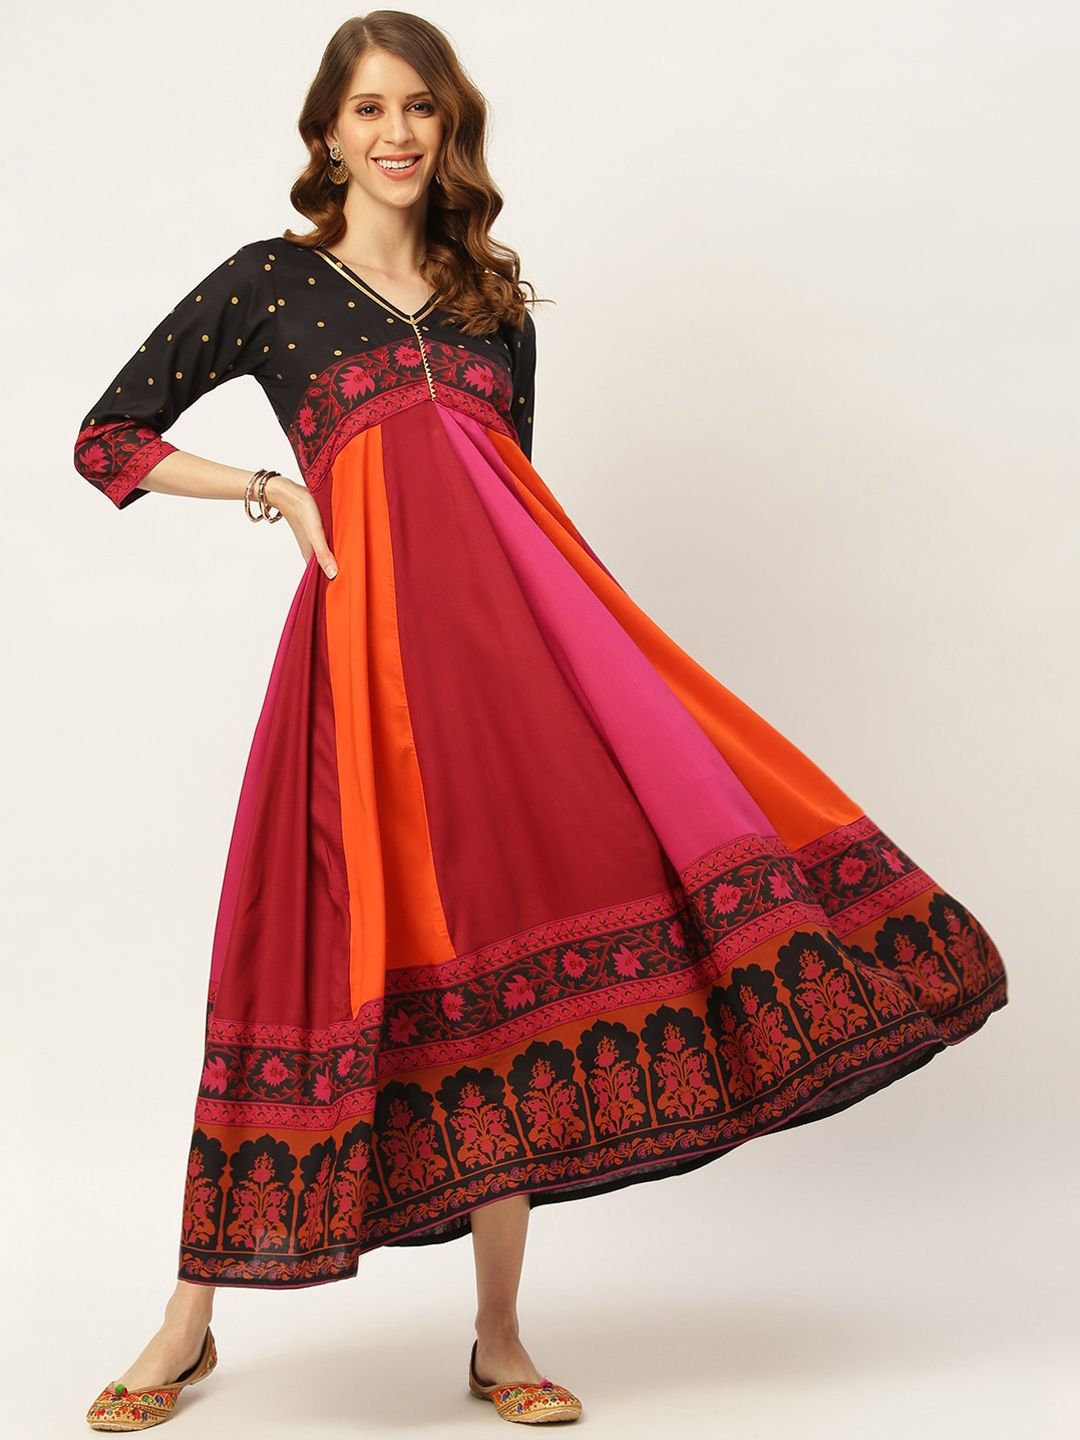 Rustorange Multicoloured Ethnic Motifs Maxi Dress Price in India